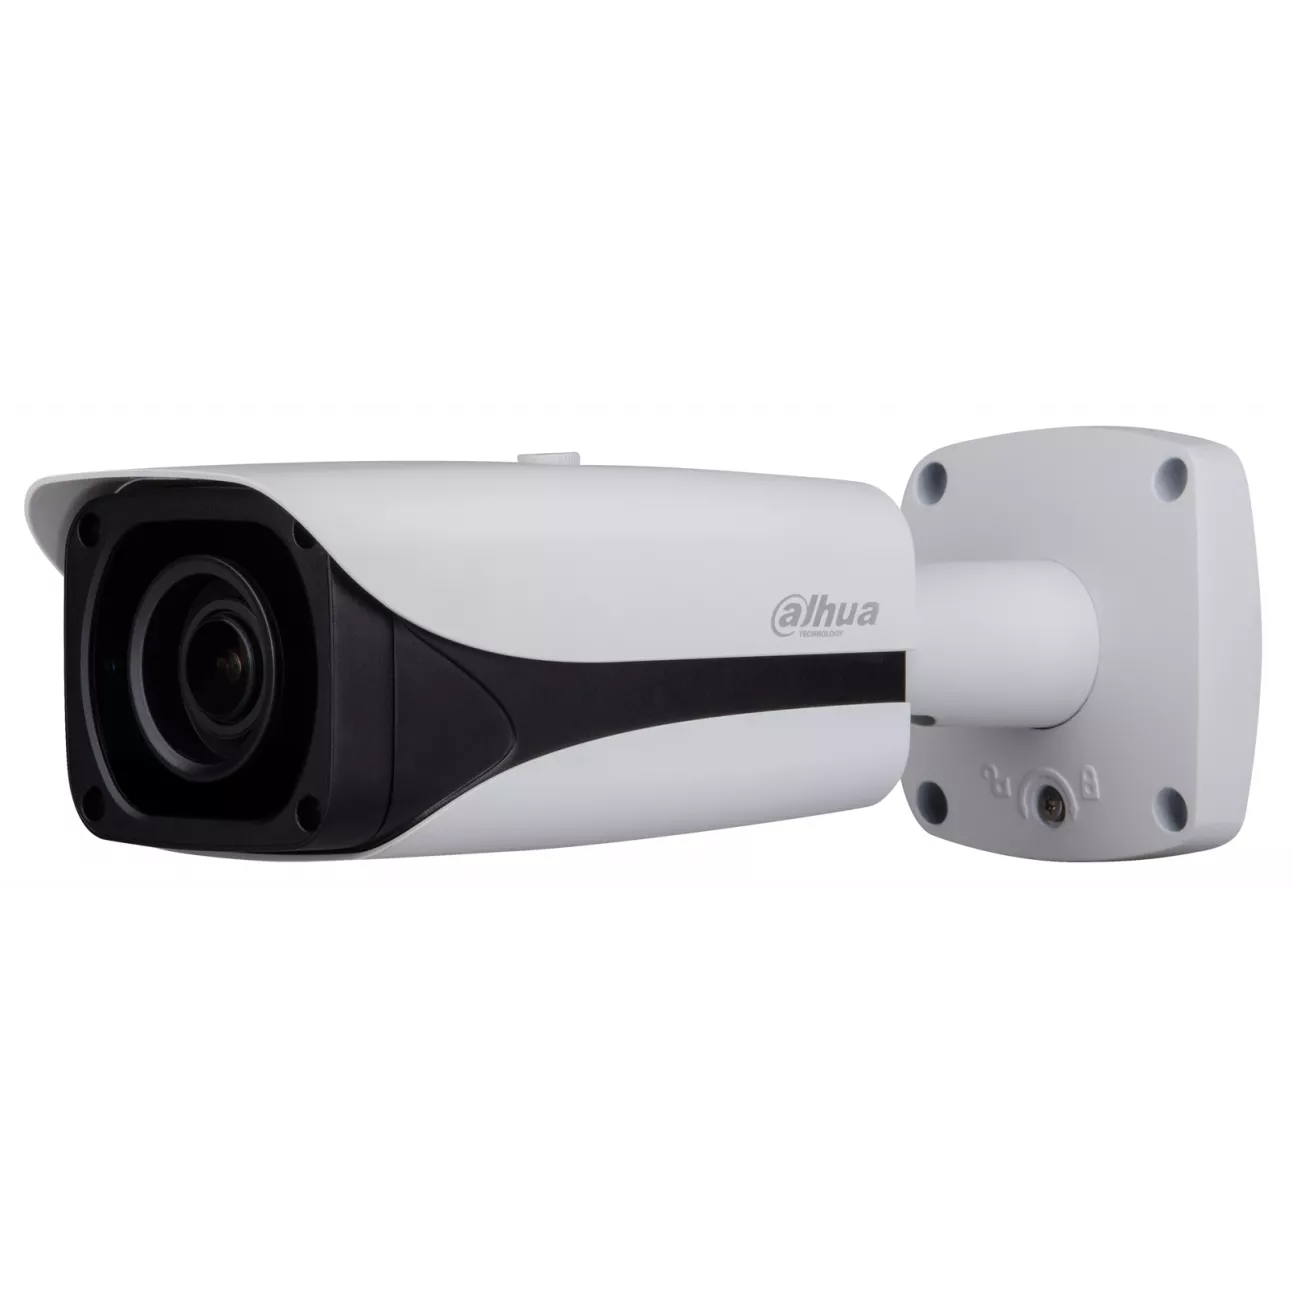 IP камера Dahua DH-IPC-HFW5431EP-Z уличная 4 Мп, WDR 120 дБ, мотор.объектив 2.7-12 мм, тревожные и аудио входы/выходы, ИК до 50 м, IP67, PoE